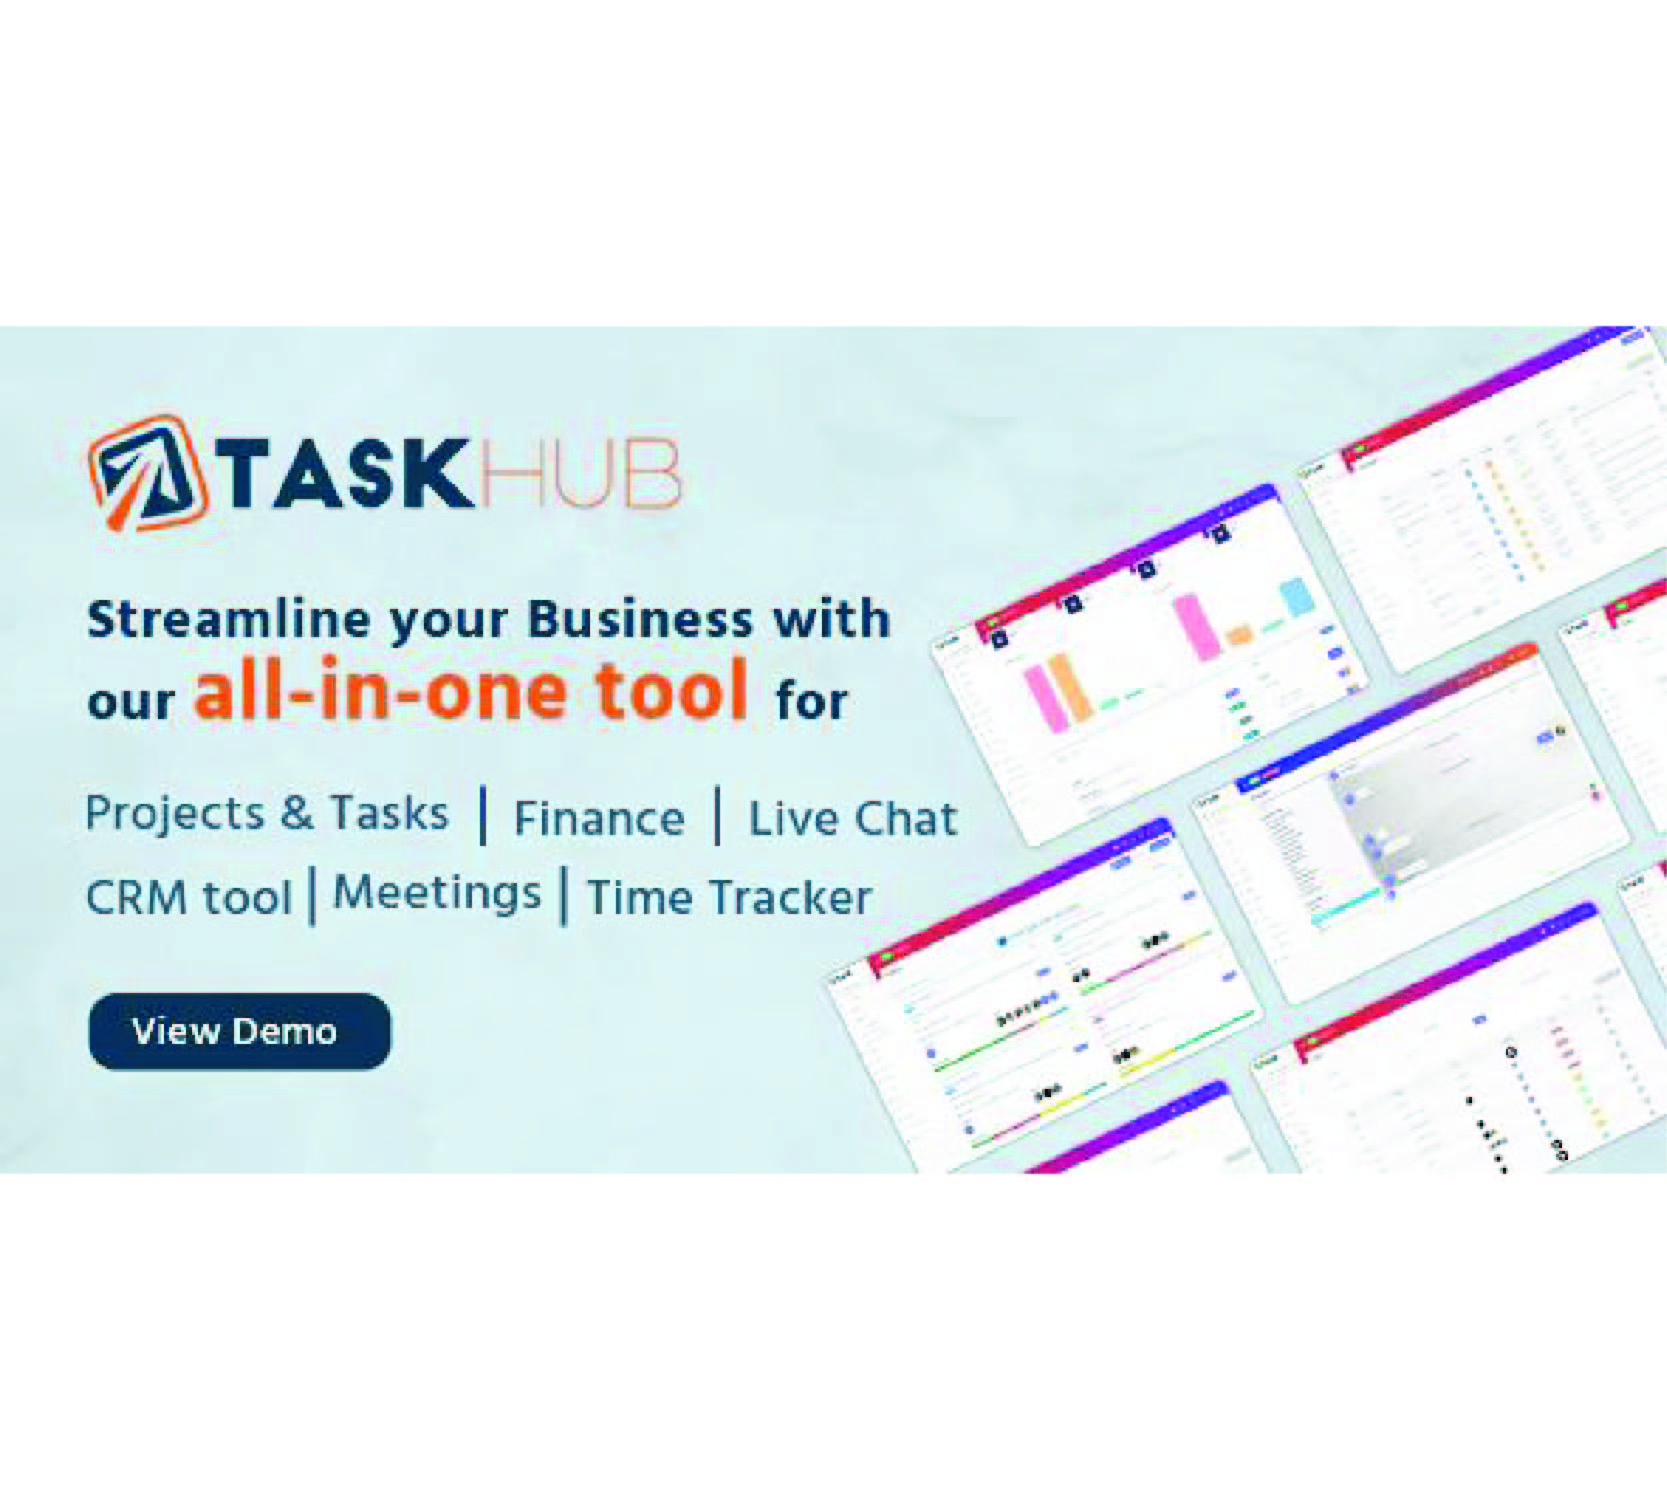 项目管理、财务、CRM 工具- Taskhub